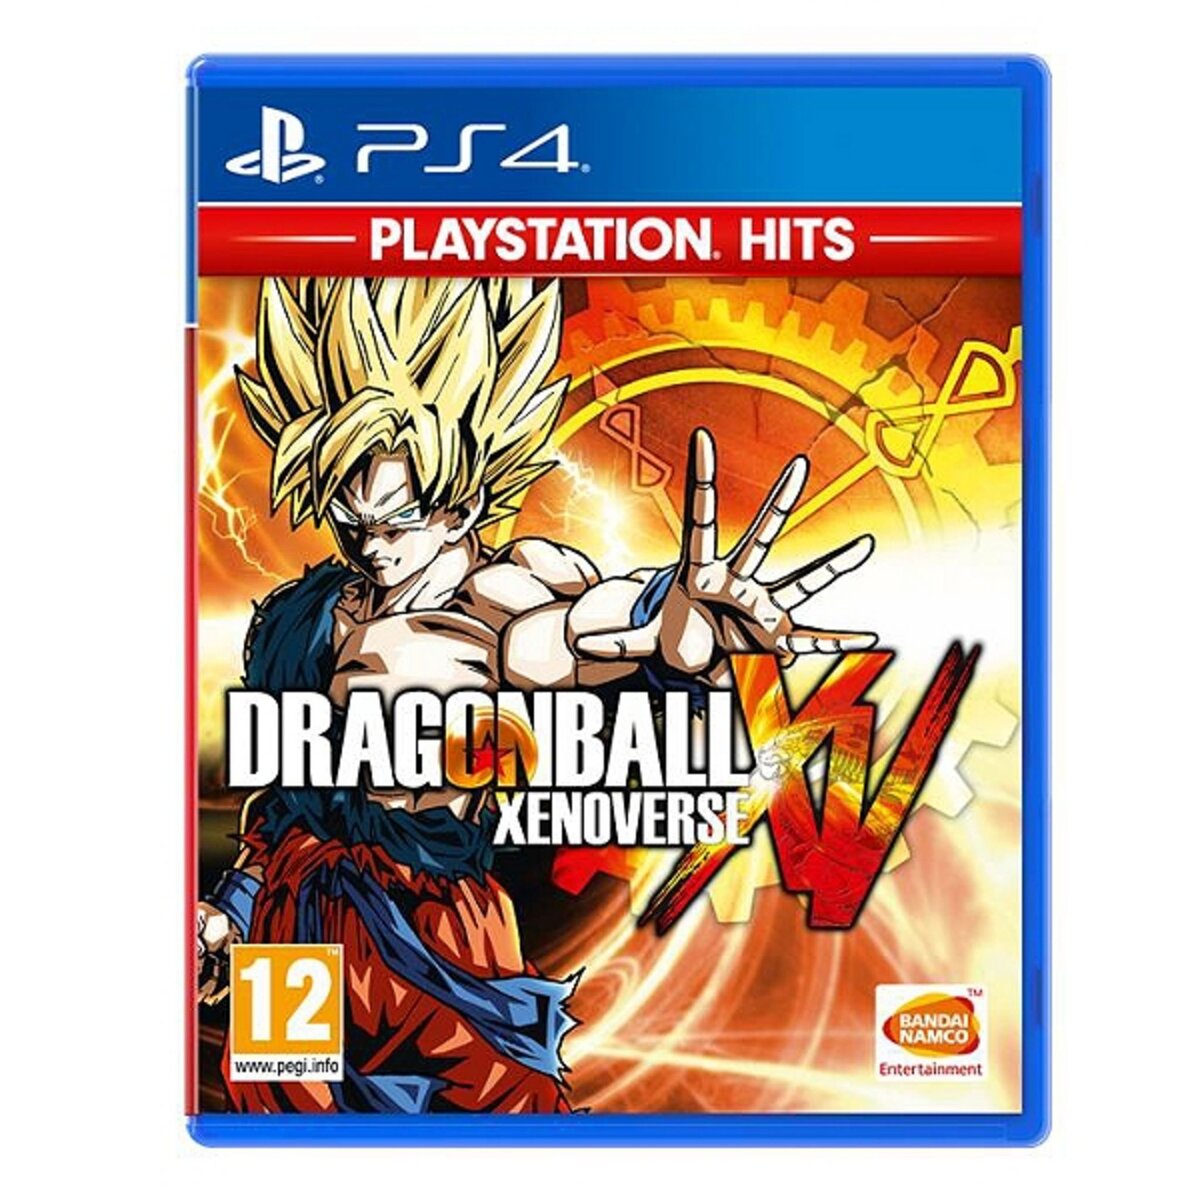 Dragon Ball Xenoverse Playstation Hits PS4